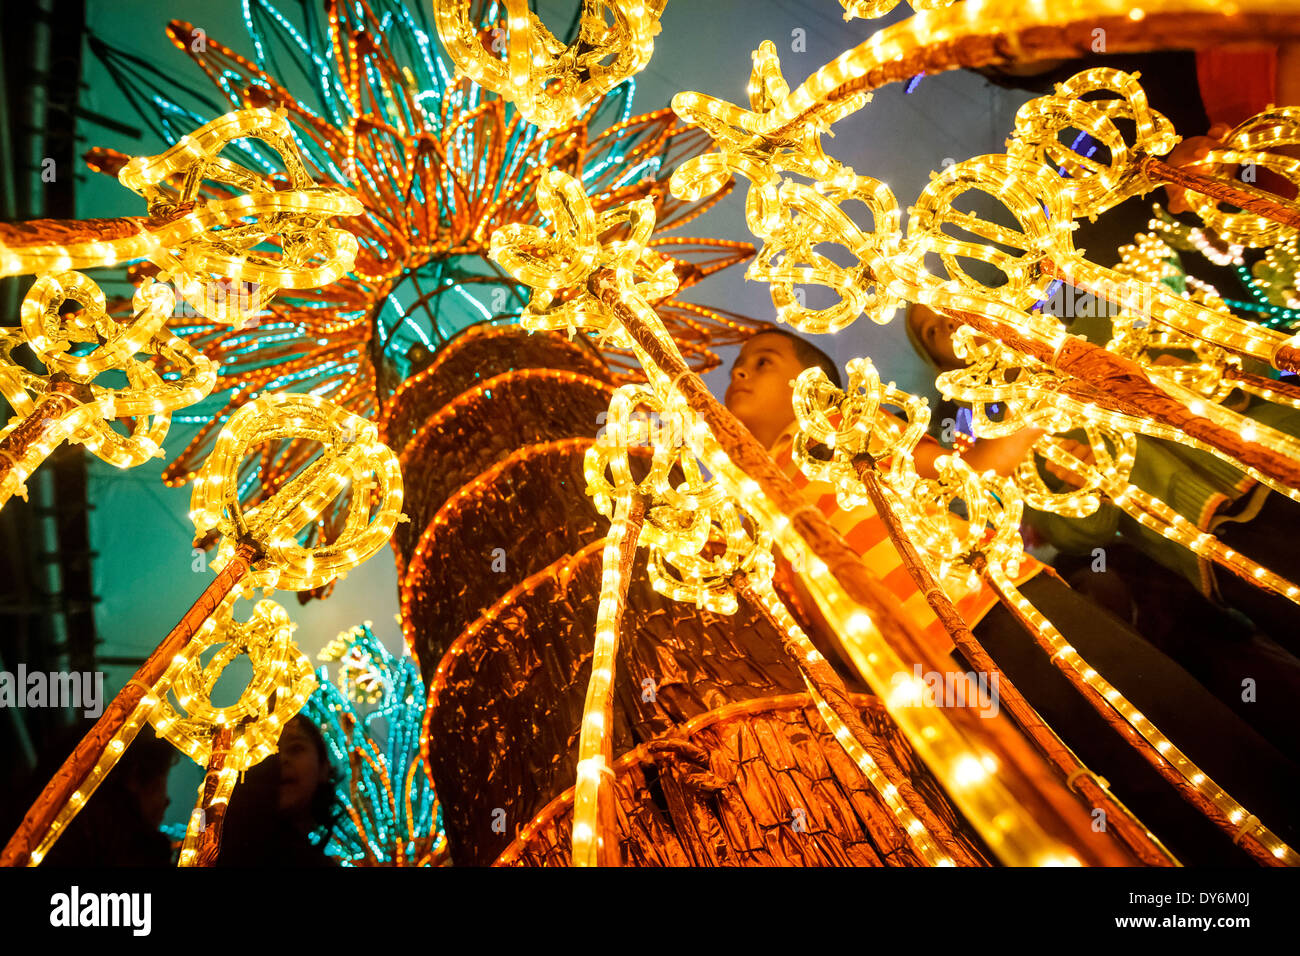 Medellin Christmas lighting. Stock Photo